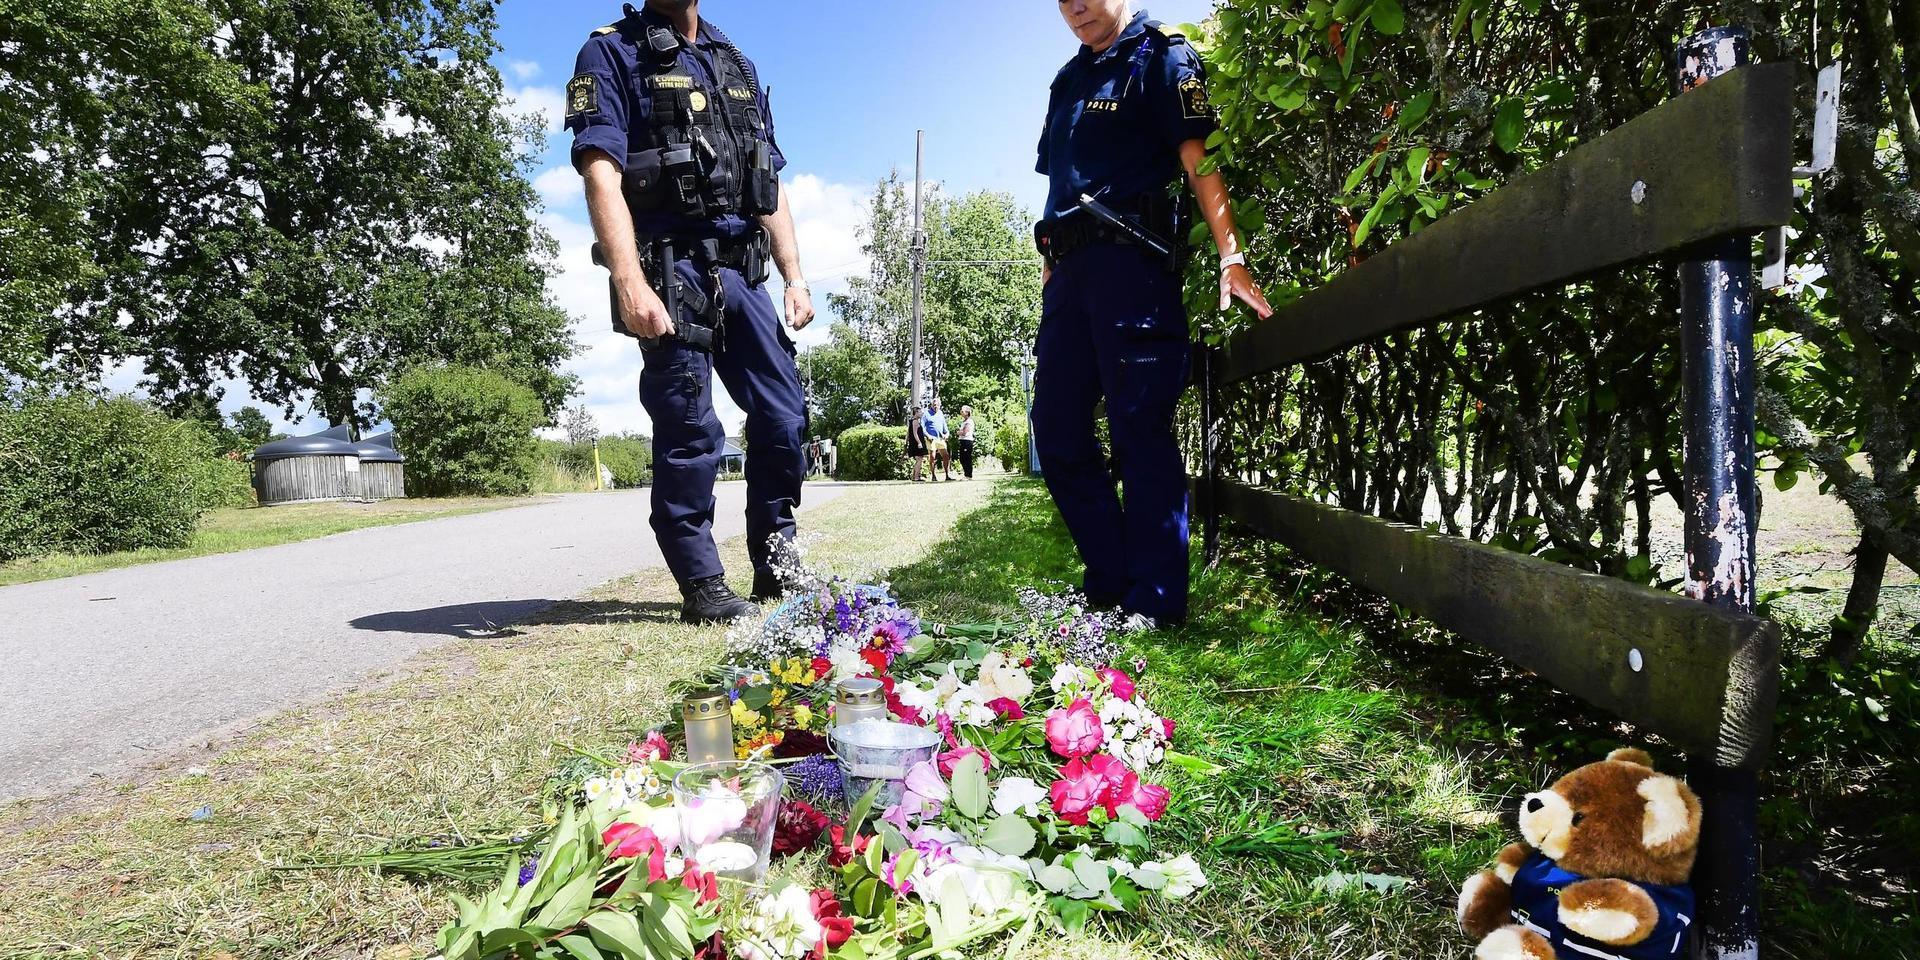 Här, vid en camping i Färjestaden på Öland, omkom en mamma och ett barn då en familj blev påkörd av en bil. Arkivbild.